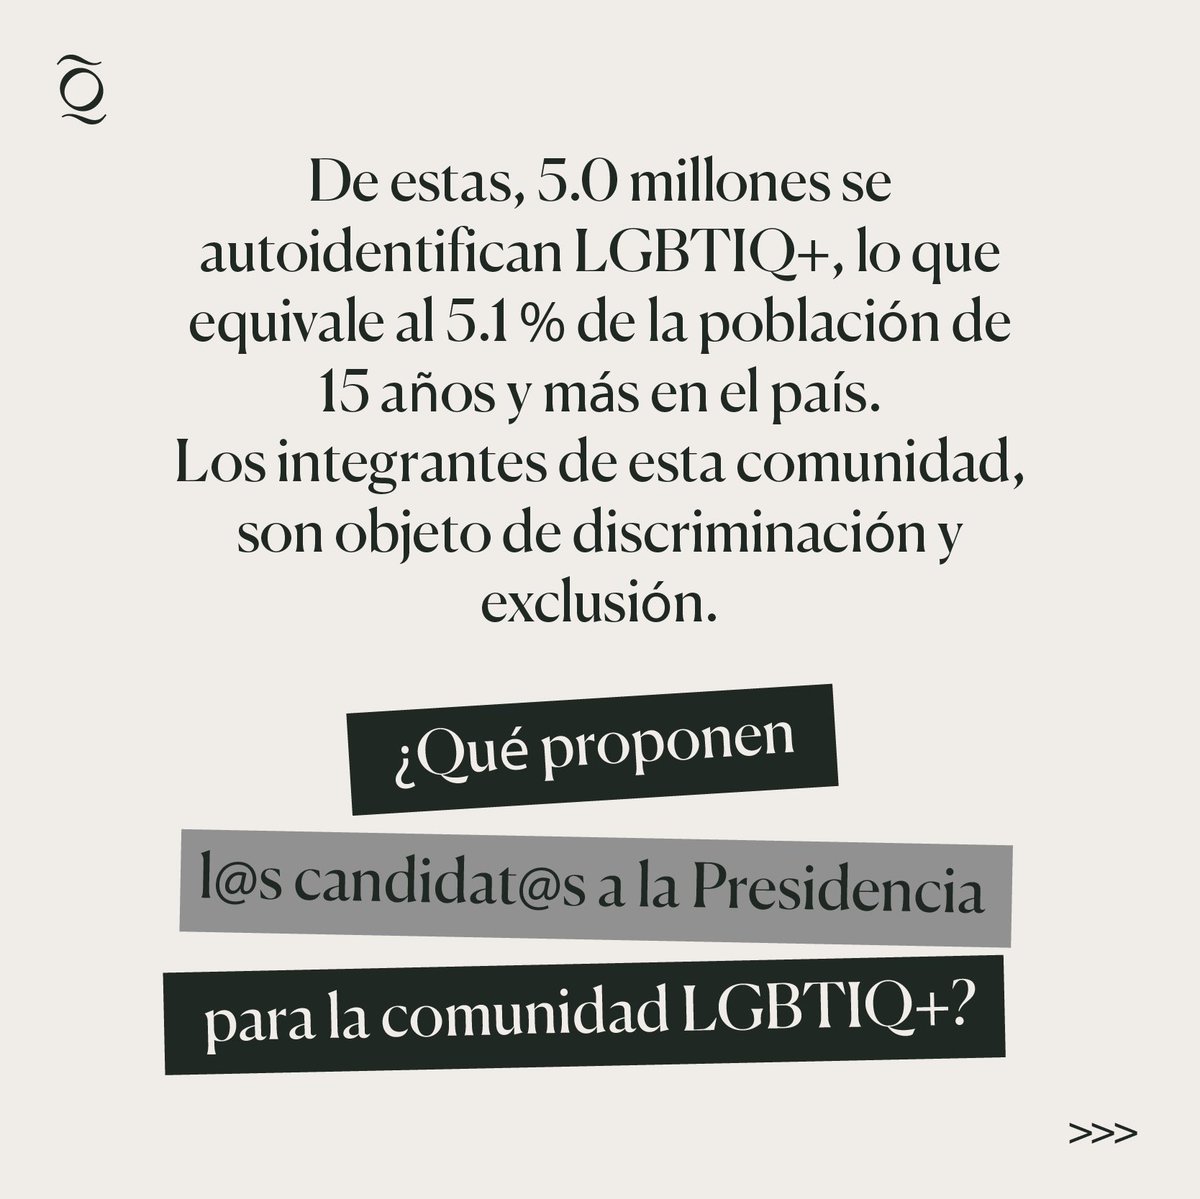 Te invitamos a conocer las propuestas de las candidatas y el candidato para la comunidad LGBTIQ+ 🏳️‍🌈 en este hilo.

#politicaspublicas #eleccionesmexico2024 #eleccionesmx2024 #asuntospúblicos #inclusiónsocial